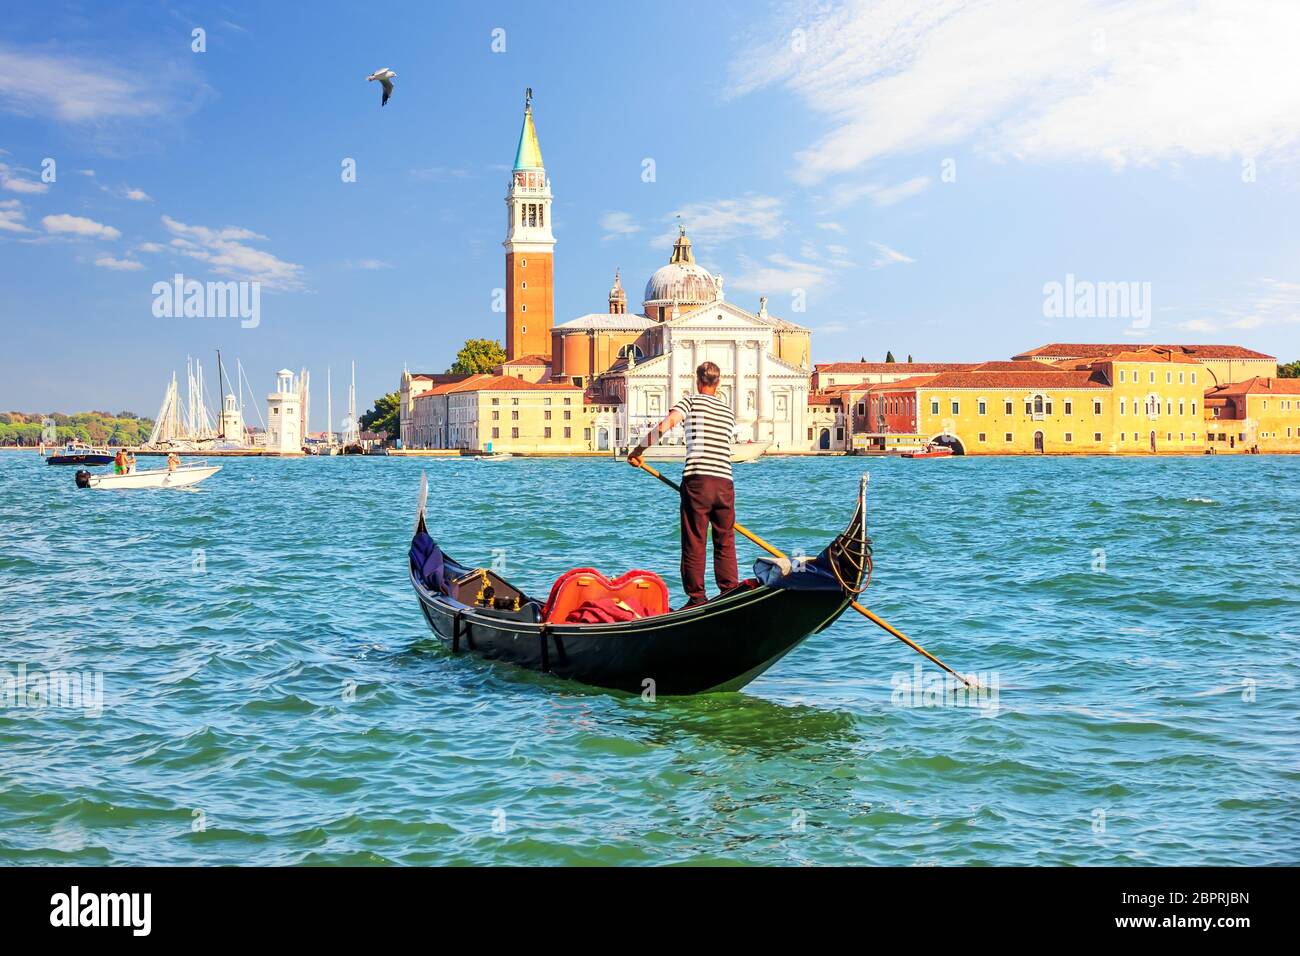 San Giorgio Maggiore Island of Venice and a traditional gondolier in his gondola. Stock Photo